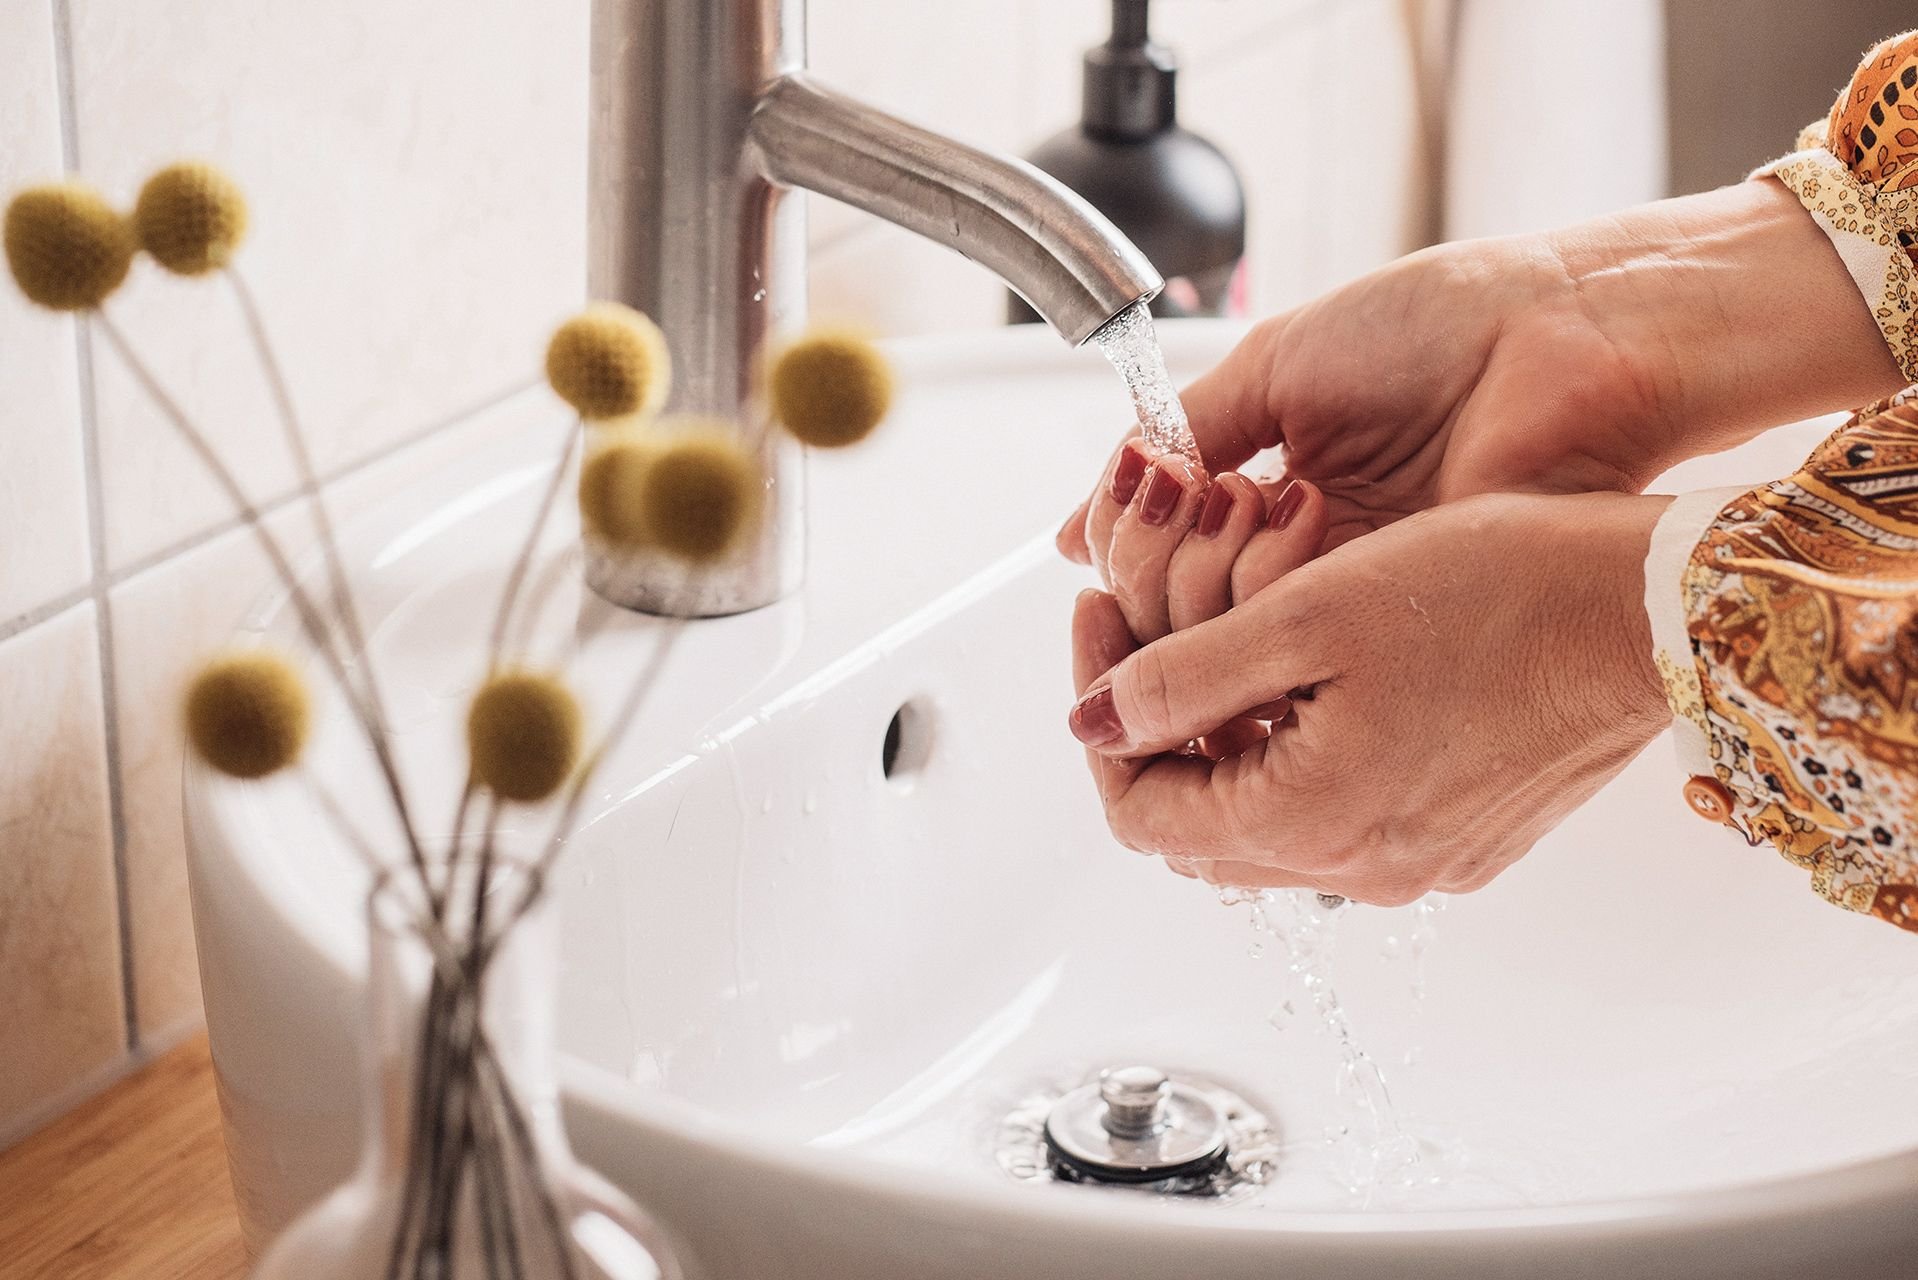 Окр моет руки. Мытье рук. Личная гигиена мытье рук. Гигиена Эстетика. Девушка моет руки.